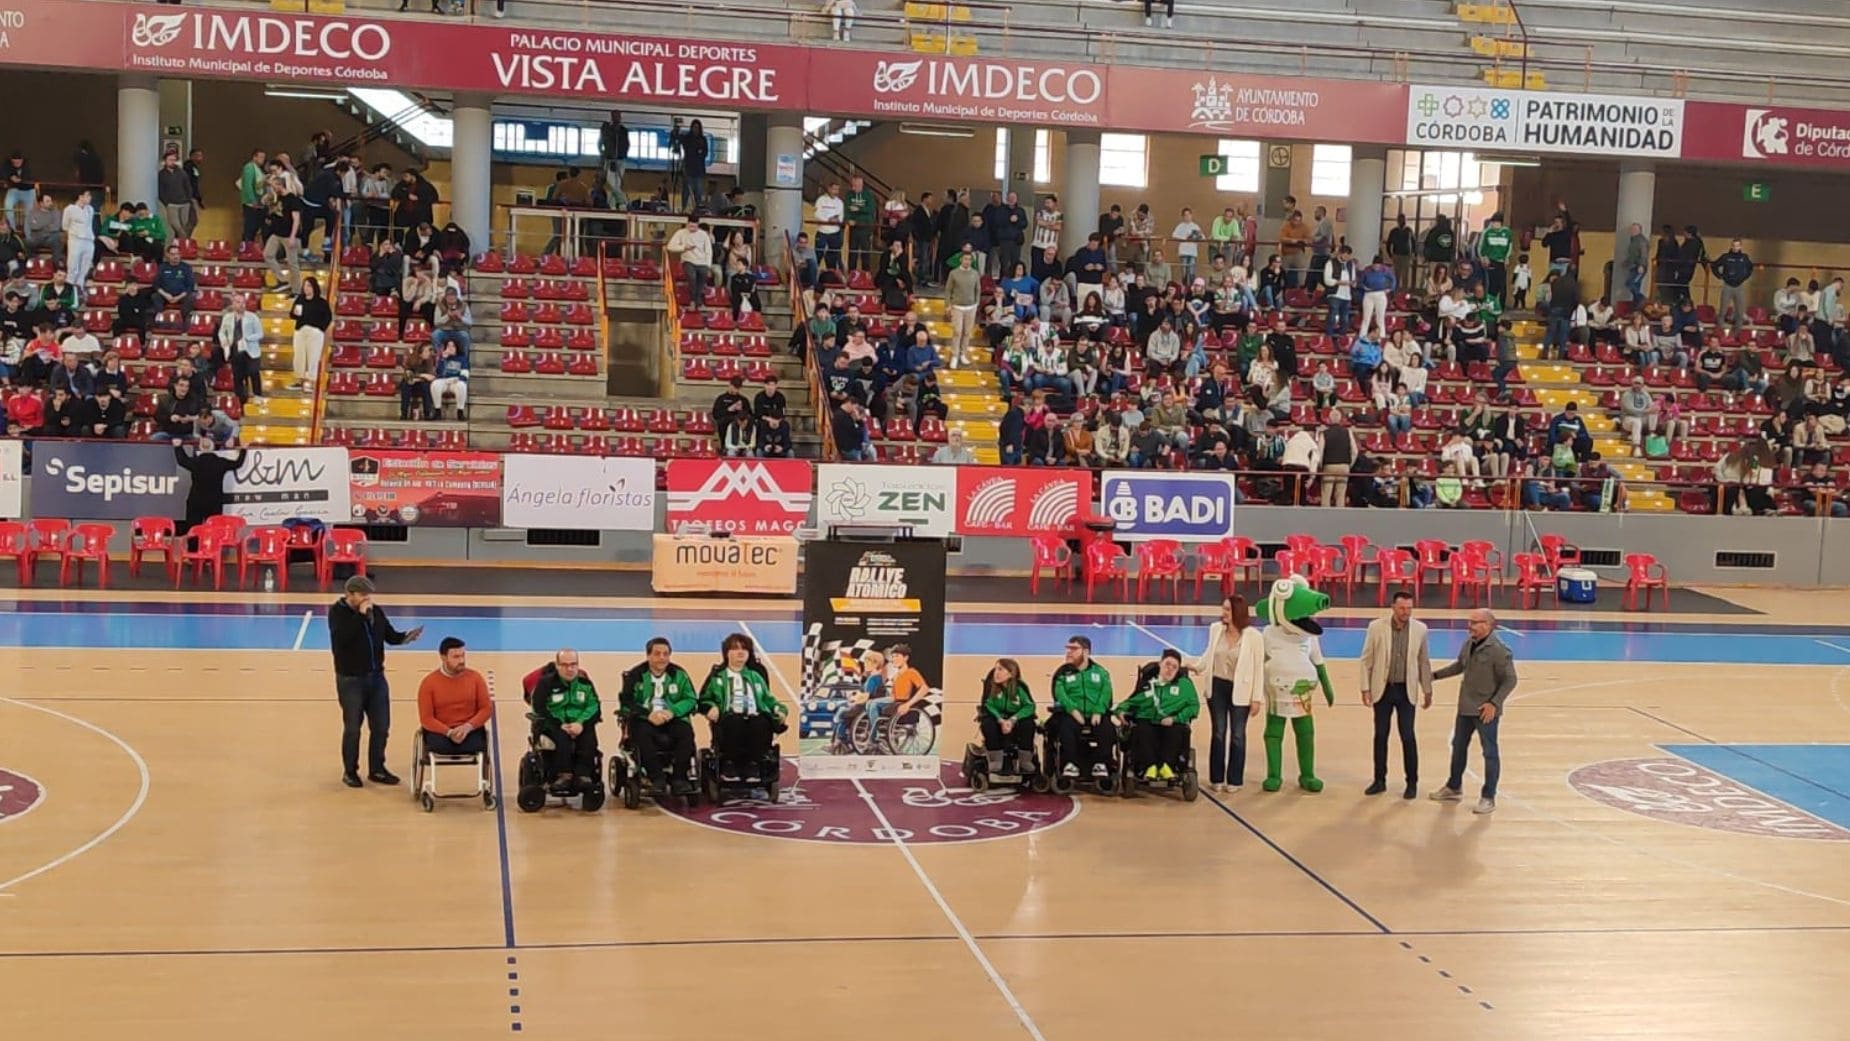 El Rally Internacional Sierra Morena lanza un reto para ayudar a la discapacidad